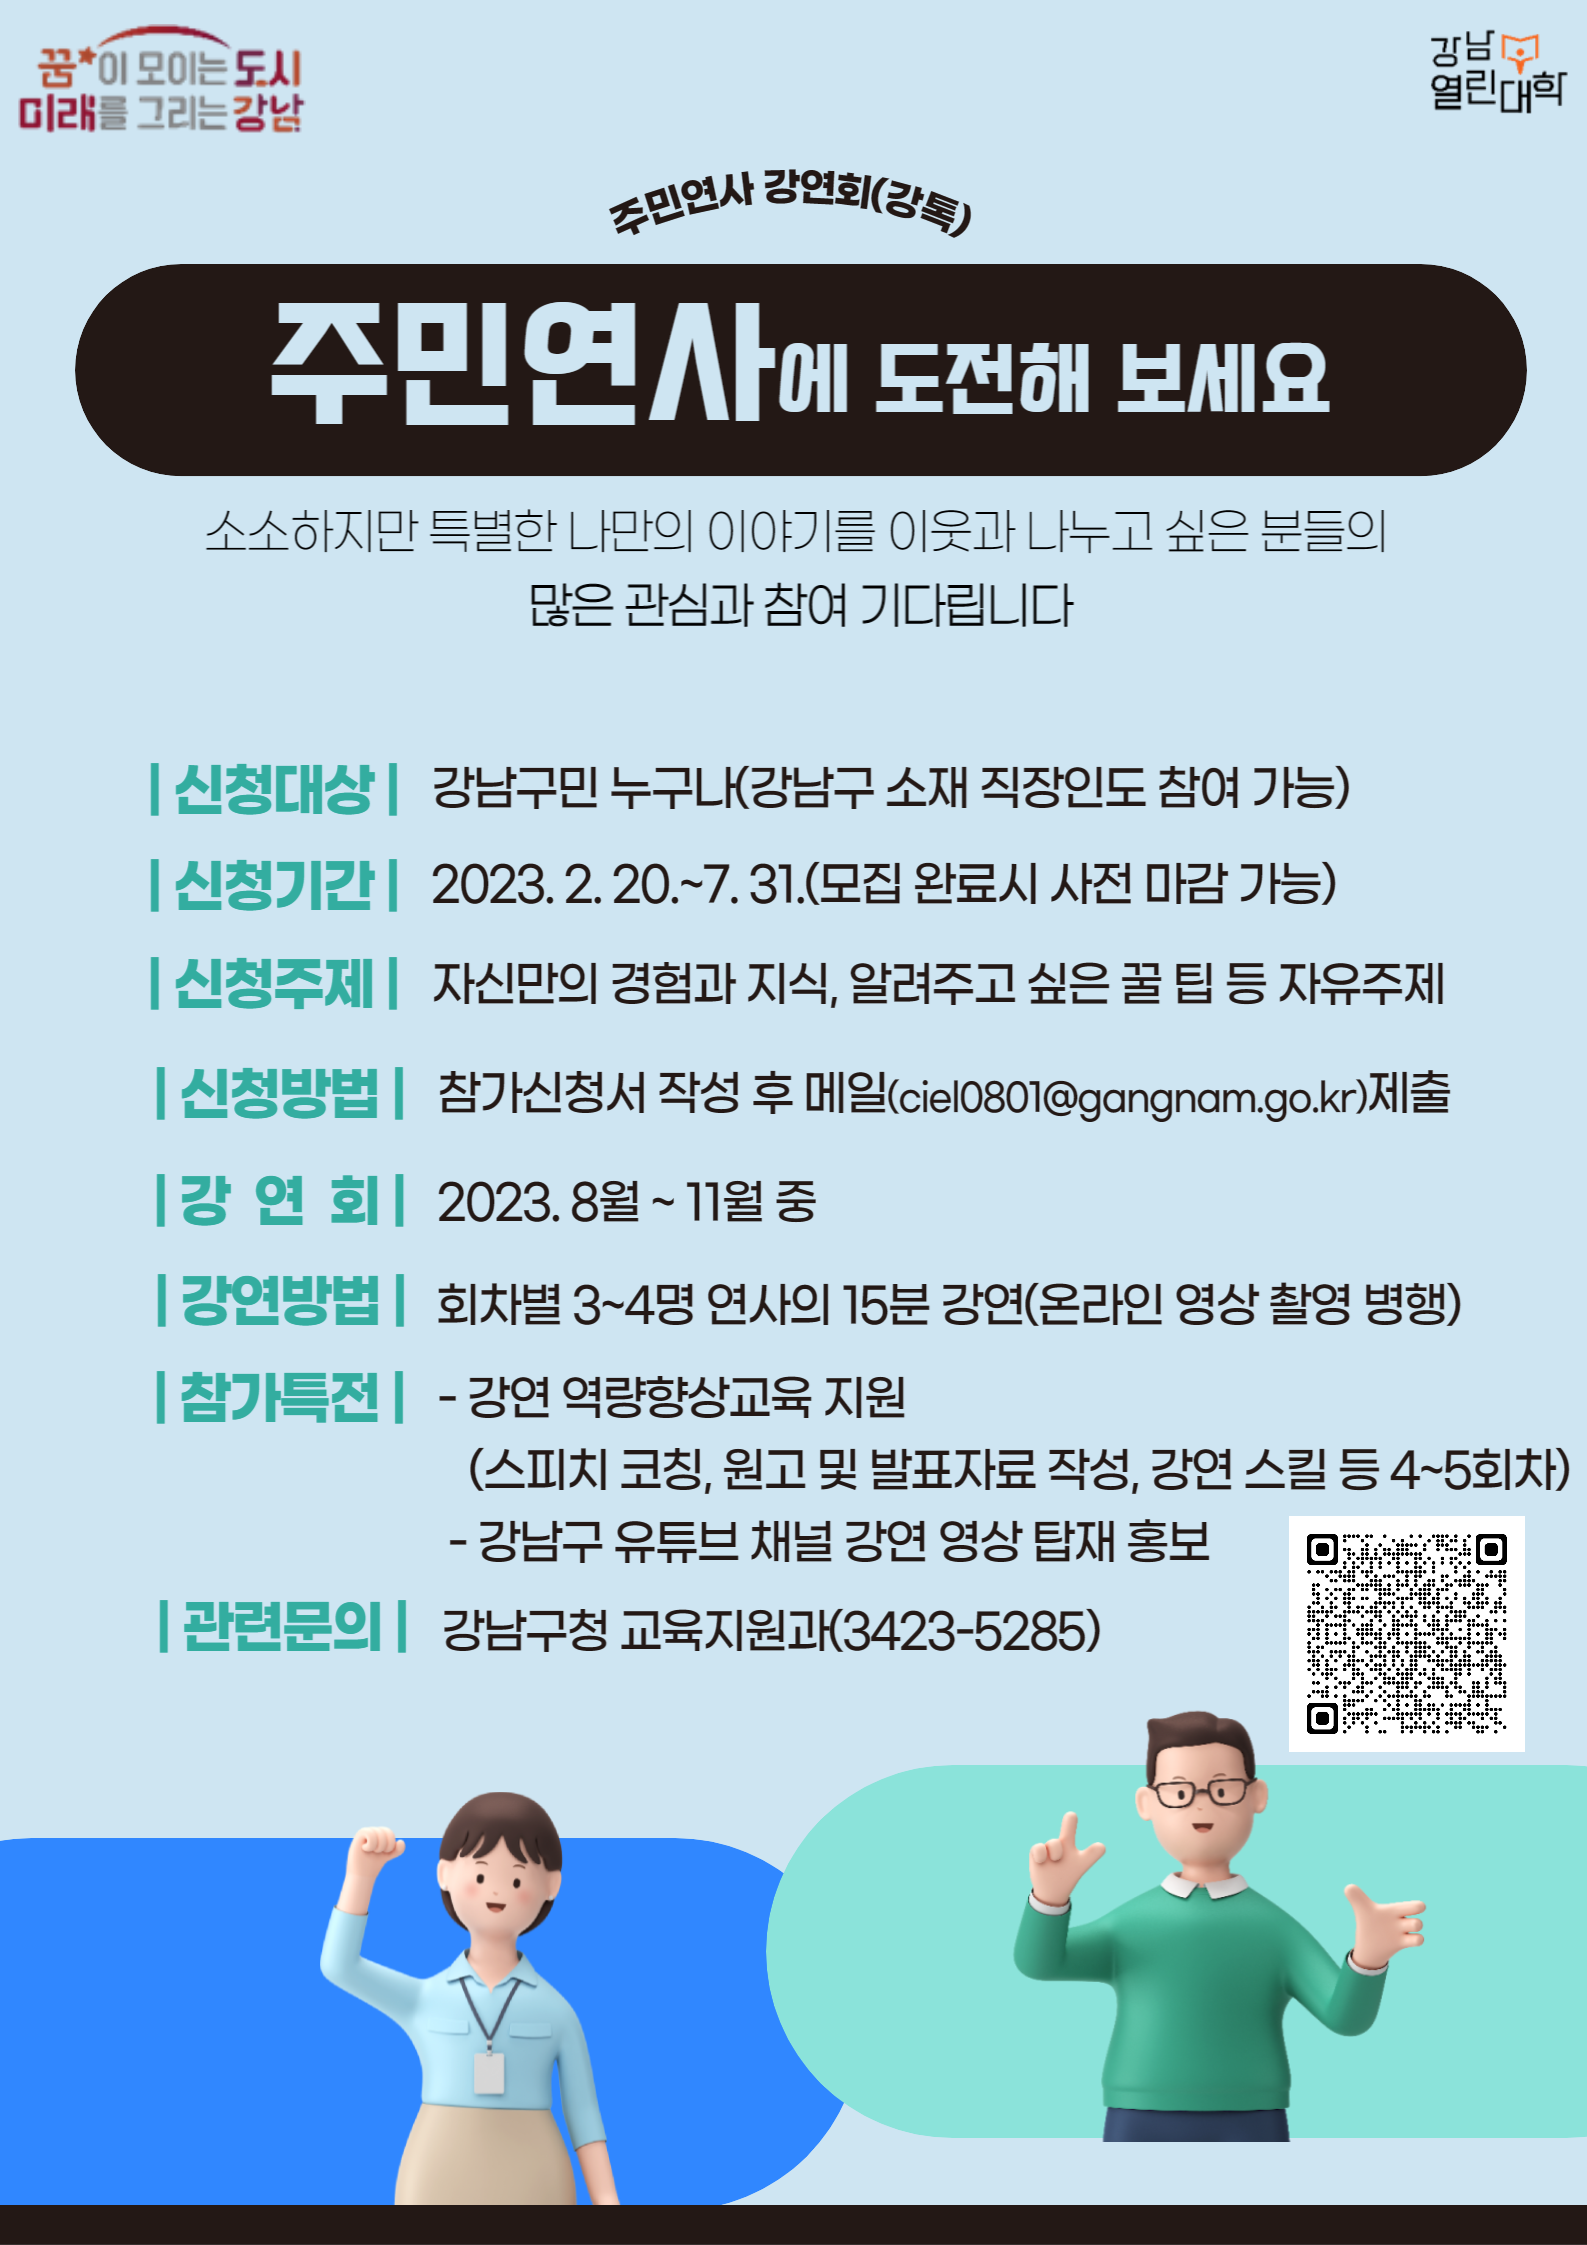 강남열린대학 주민연사 강연회(강톡)